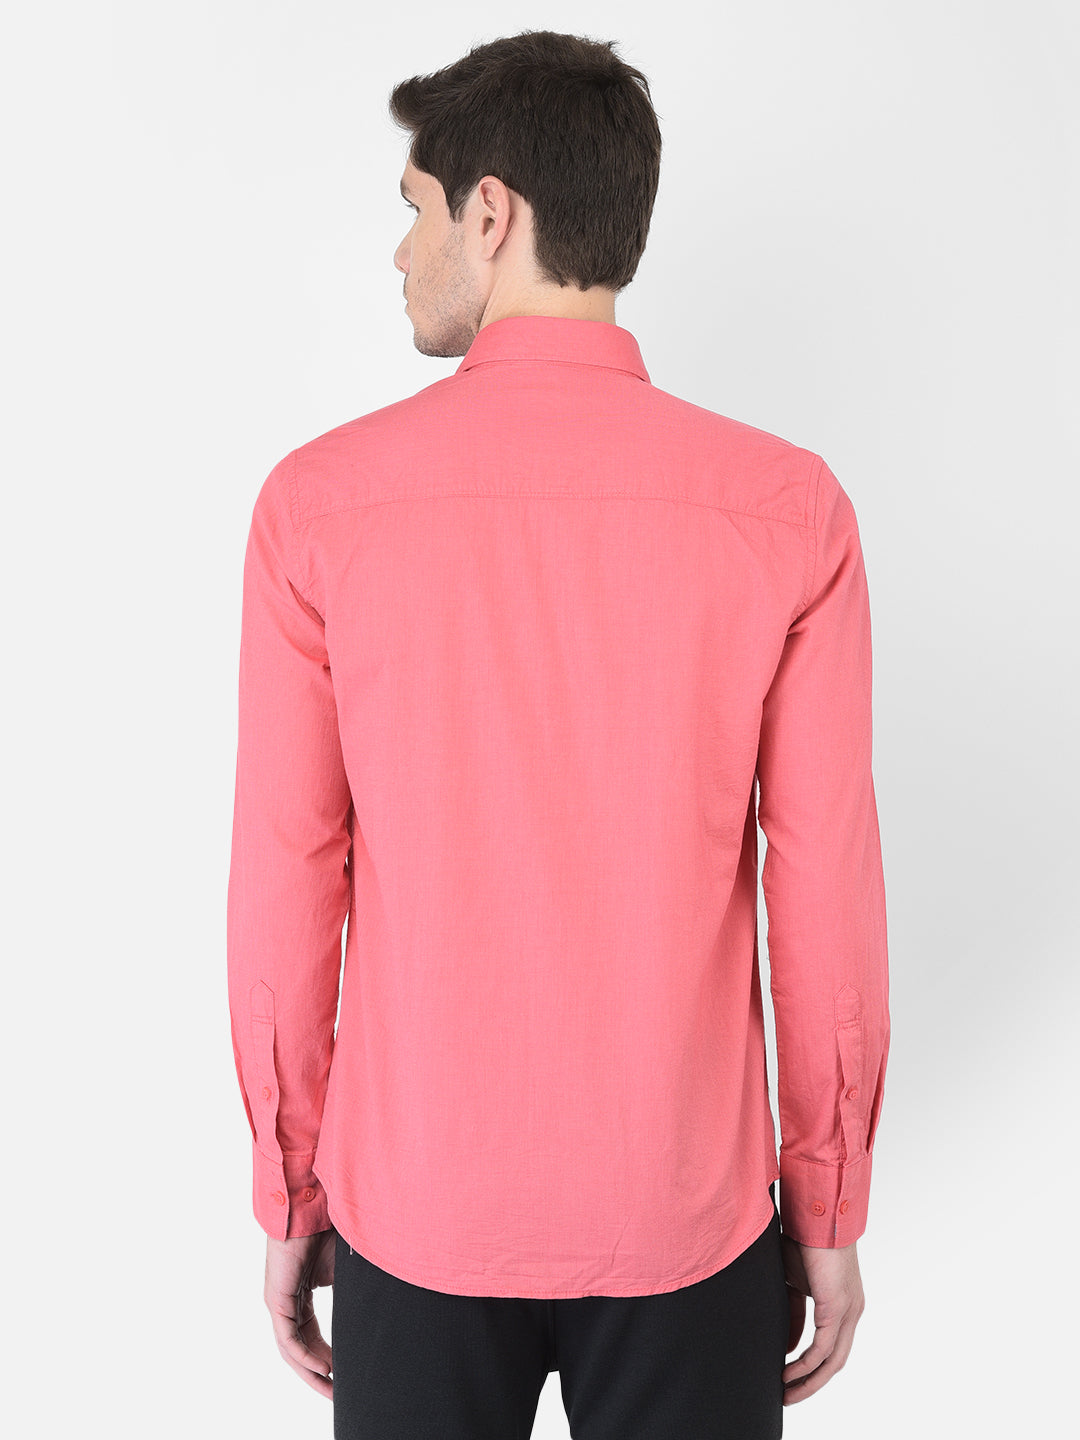 Pink Shirt - Men Shirts